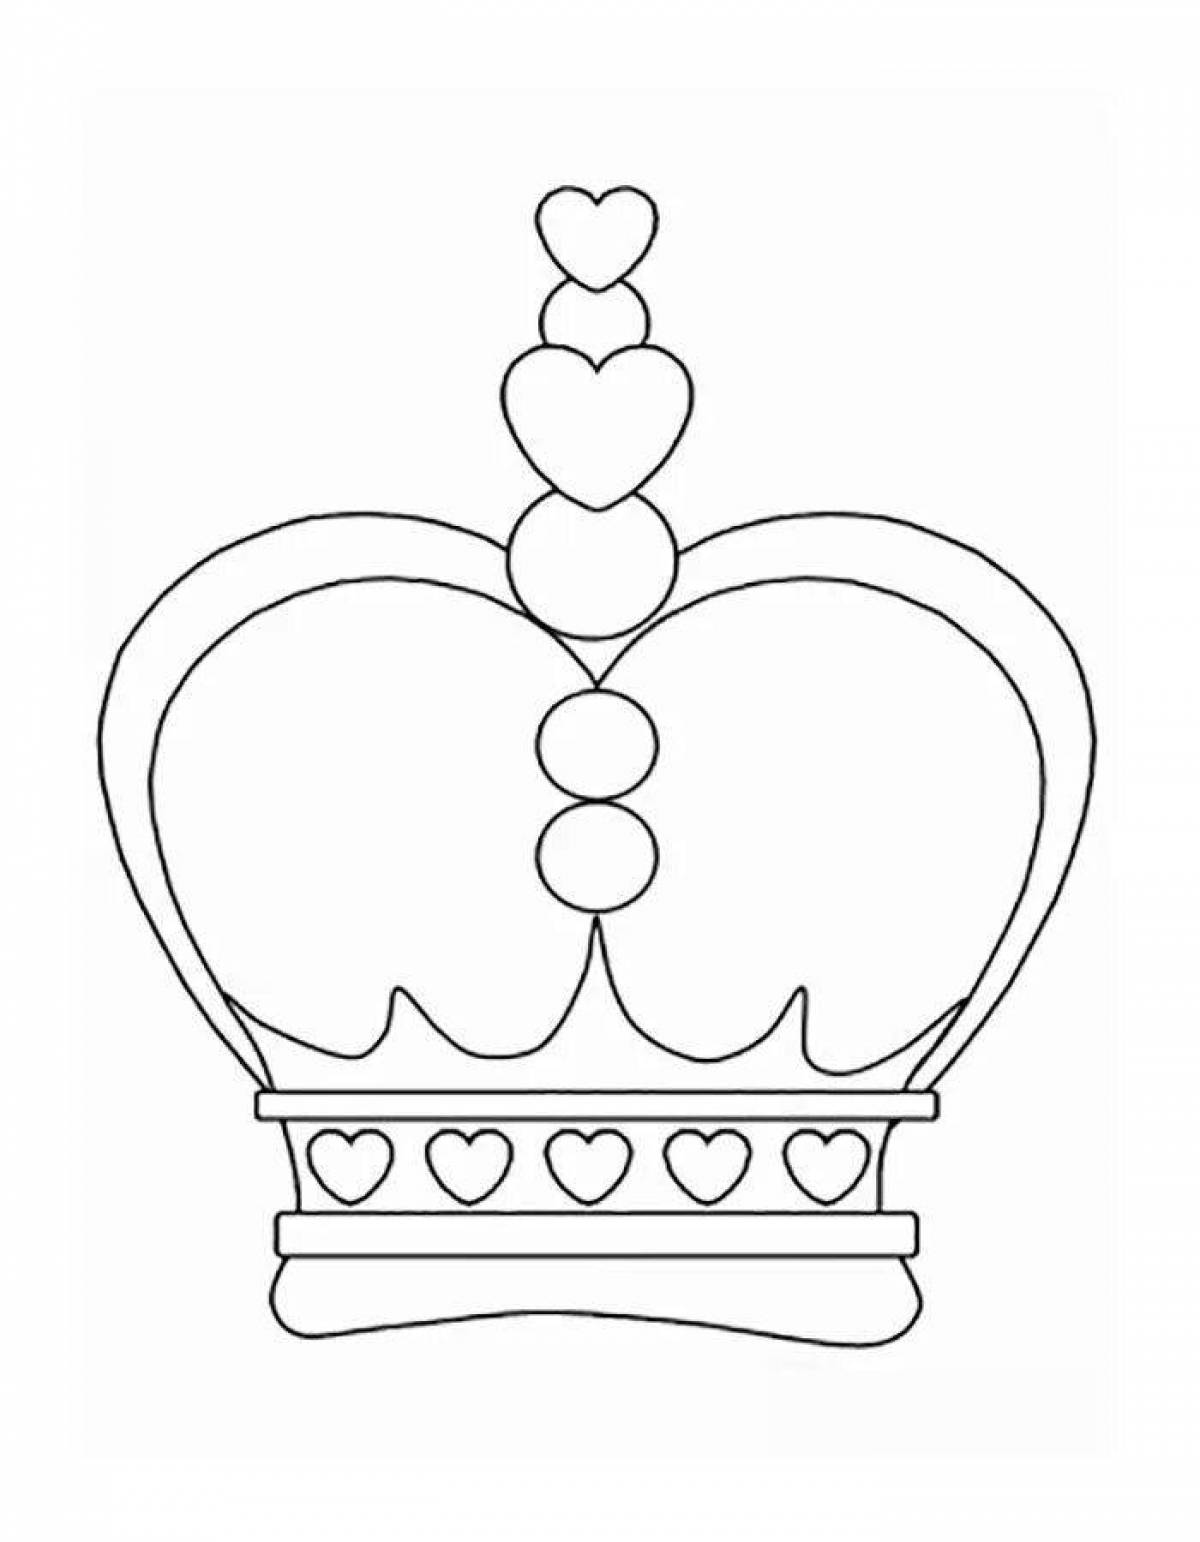 Раскраска корона короля распечатать